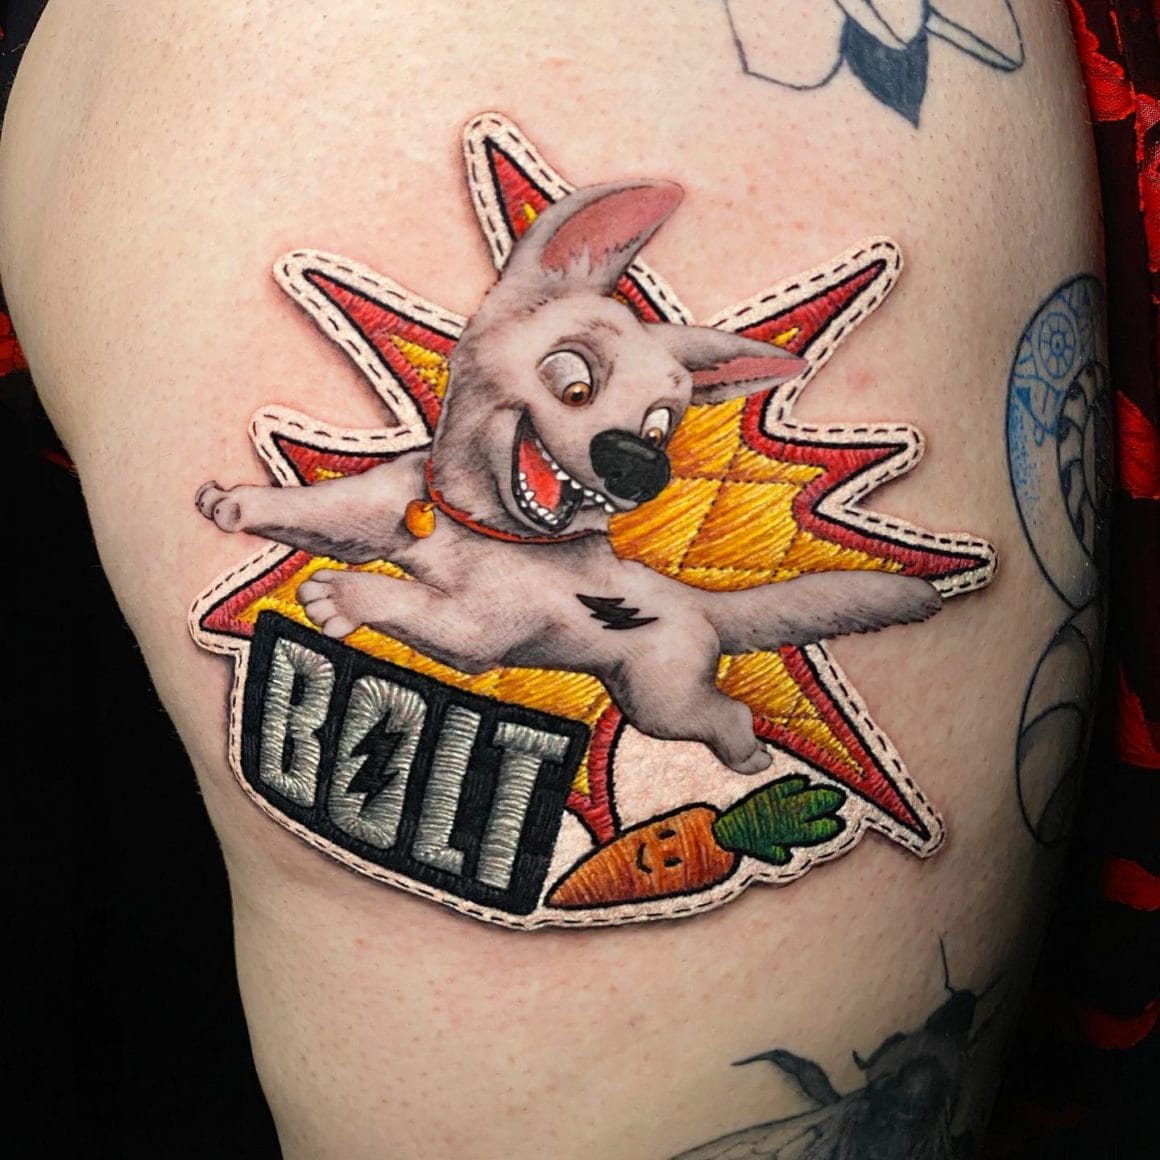 Ce tatouage représente le petit chien de Bolt, avec sa carotte et un flash pour montrer sa vitesse.